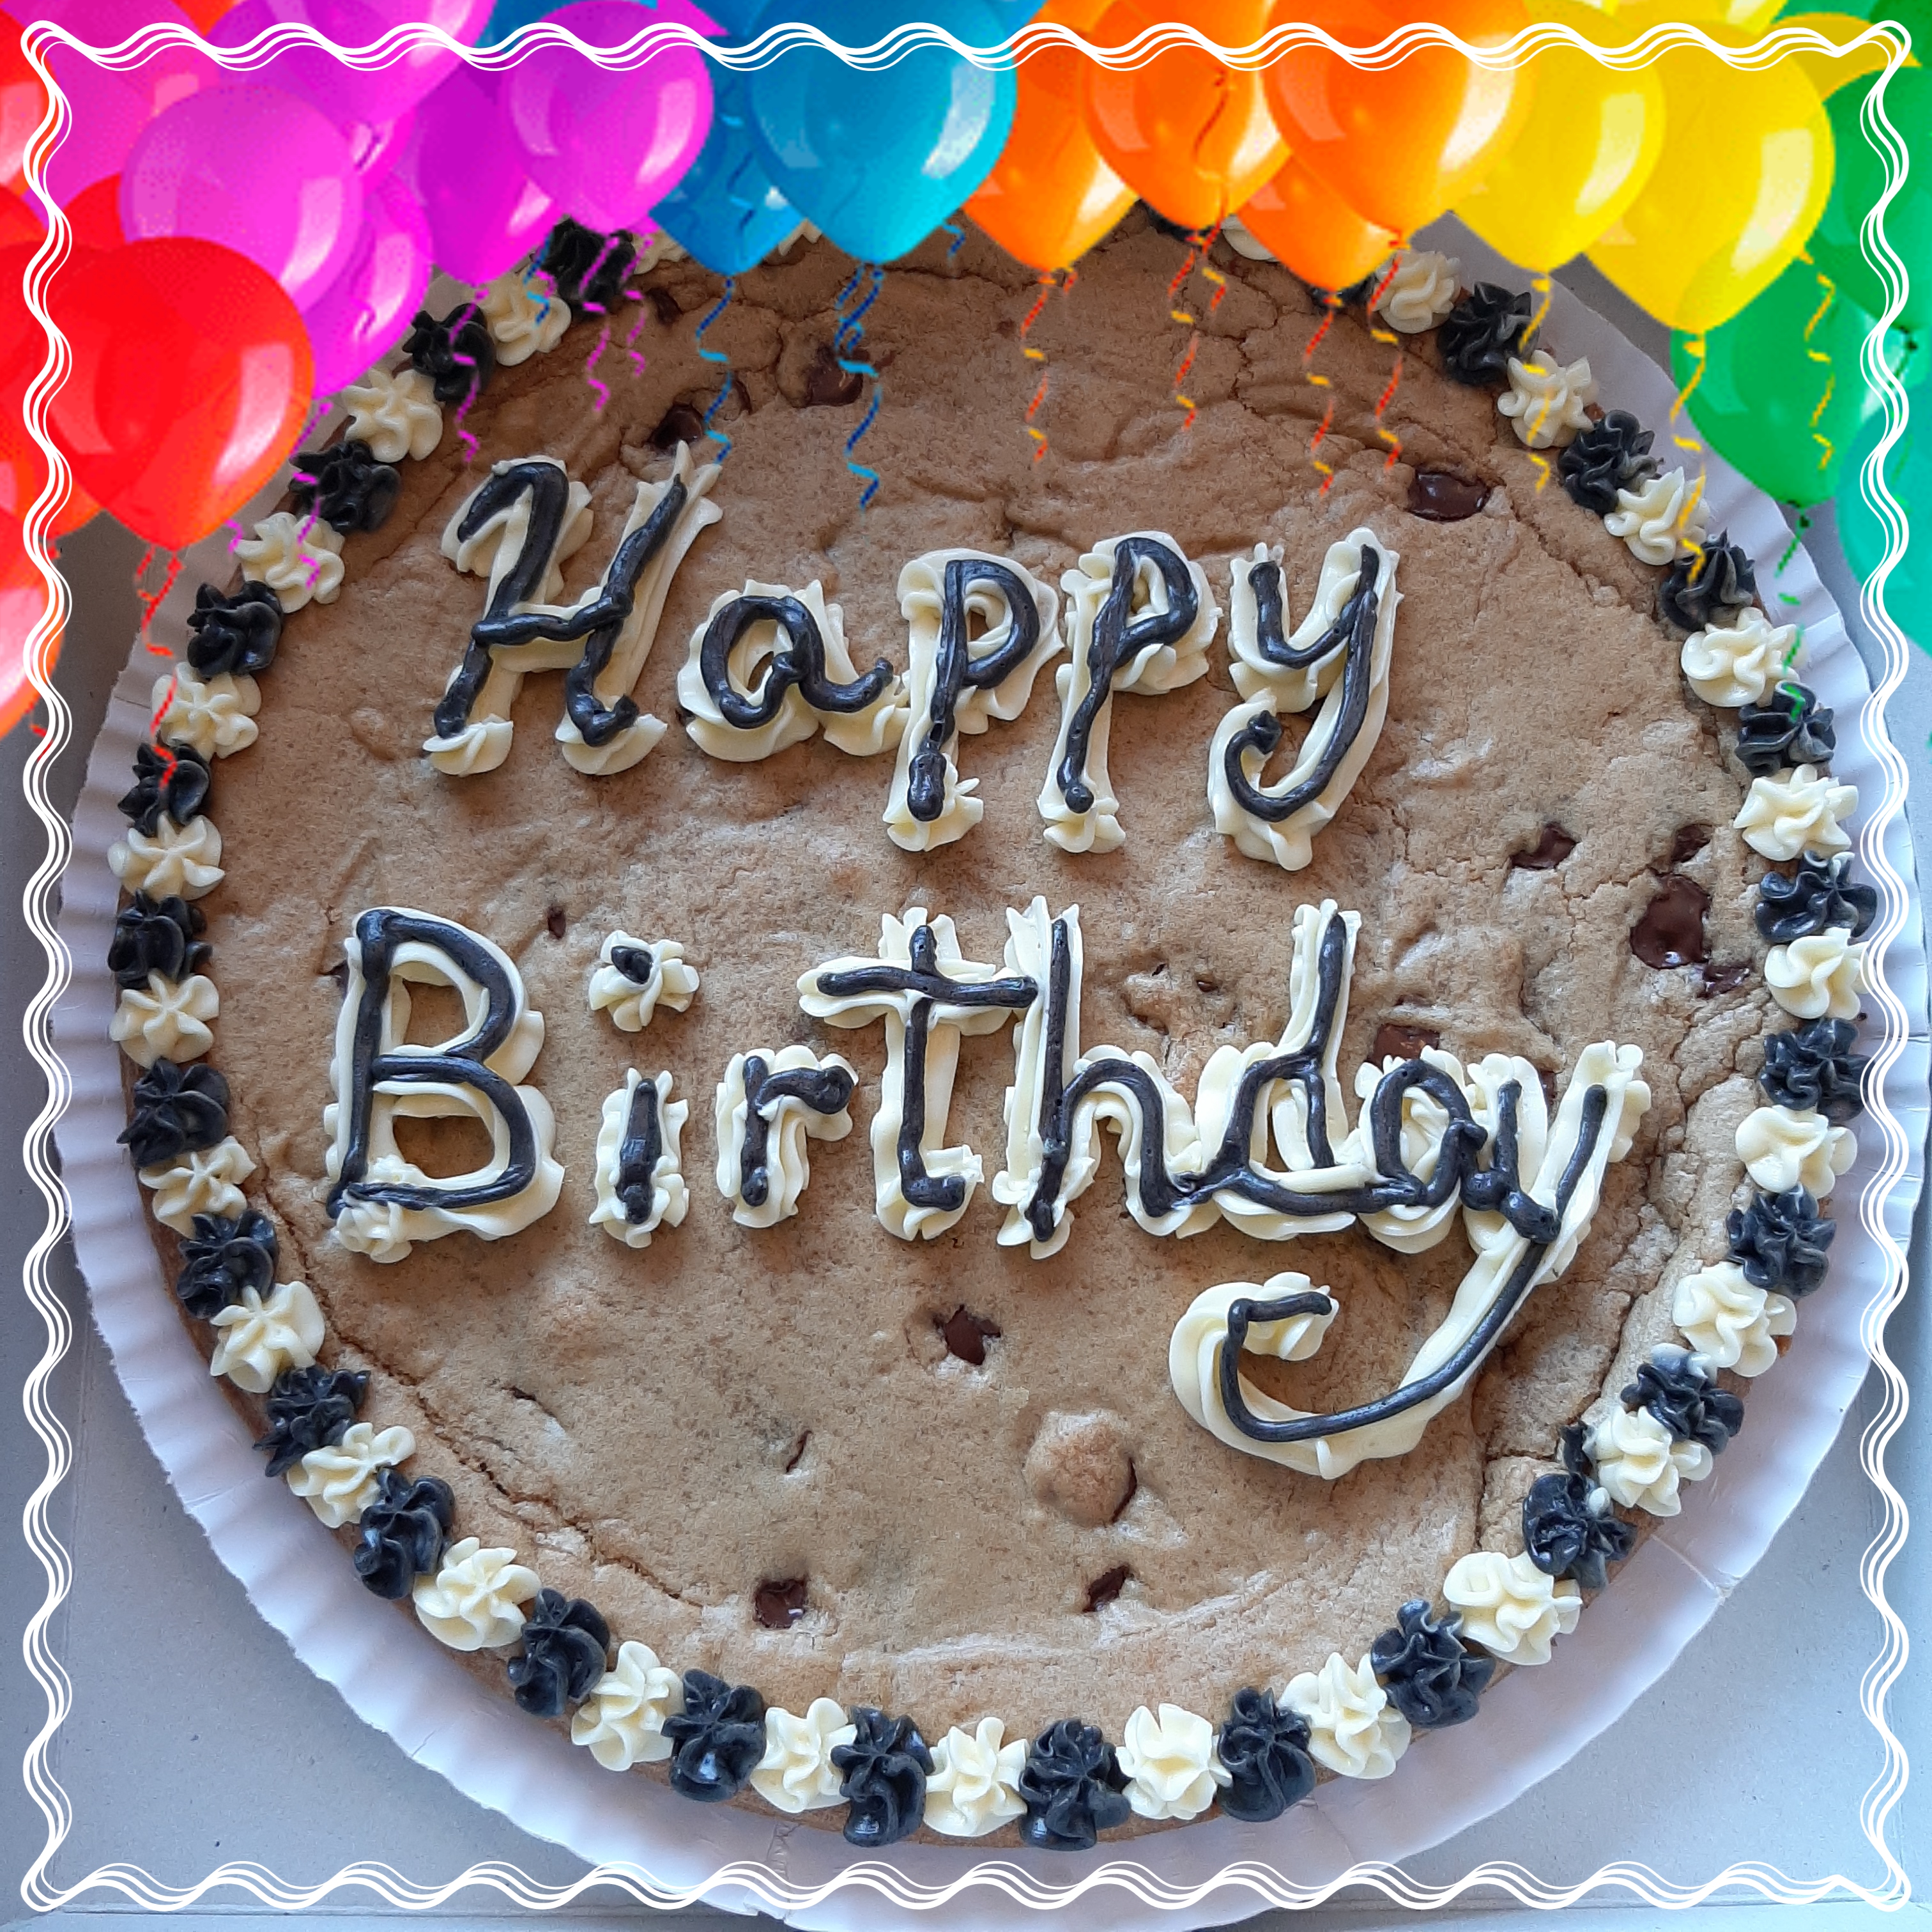 Happy Birthday cookie cake